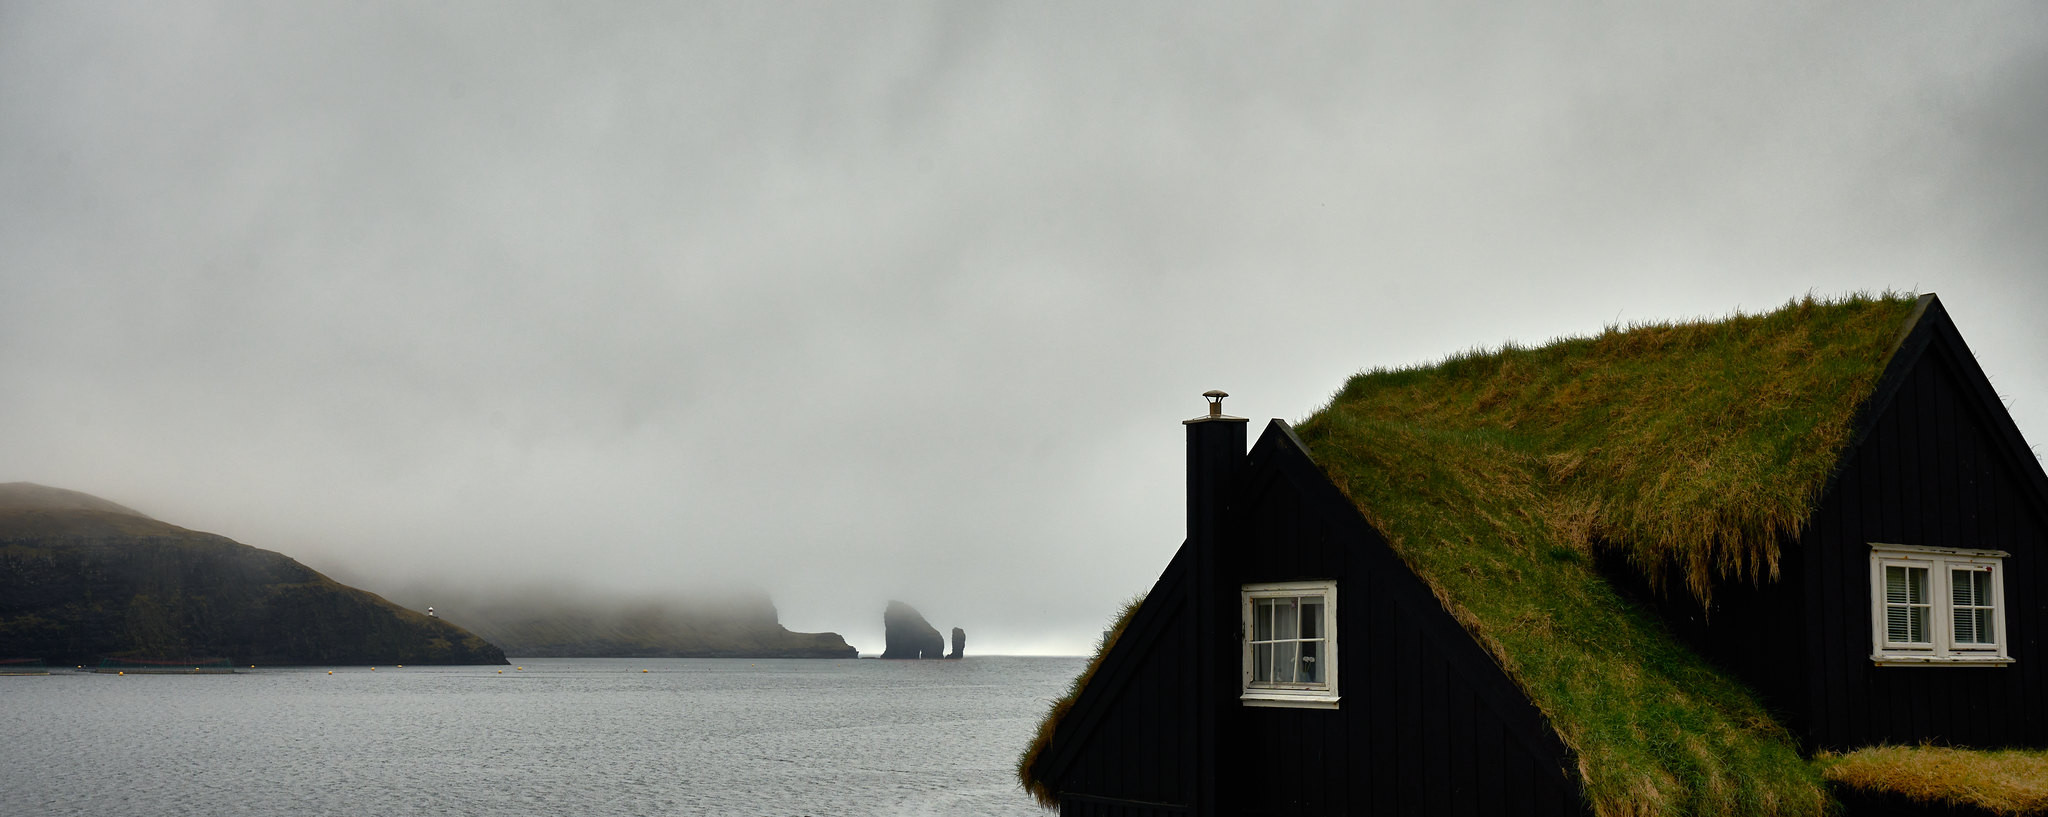 OY/M0JHQ Faroe Islands